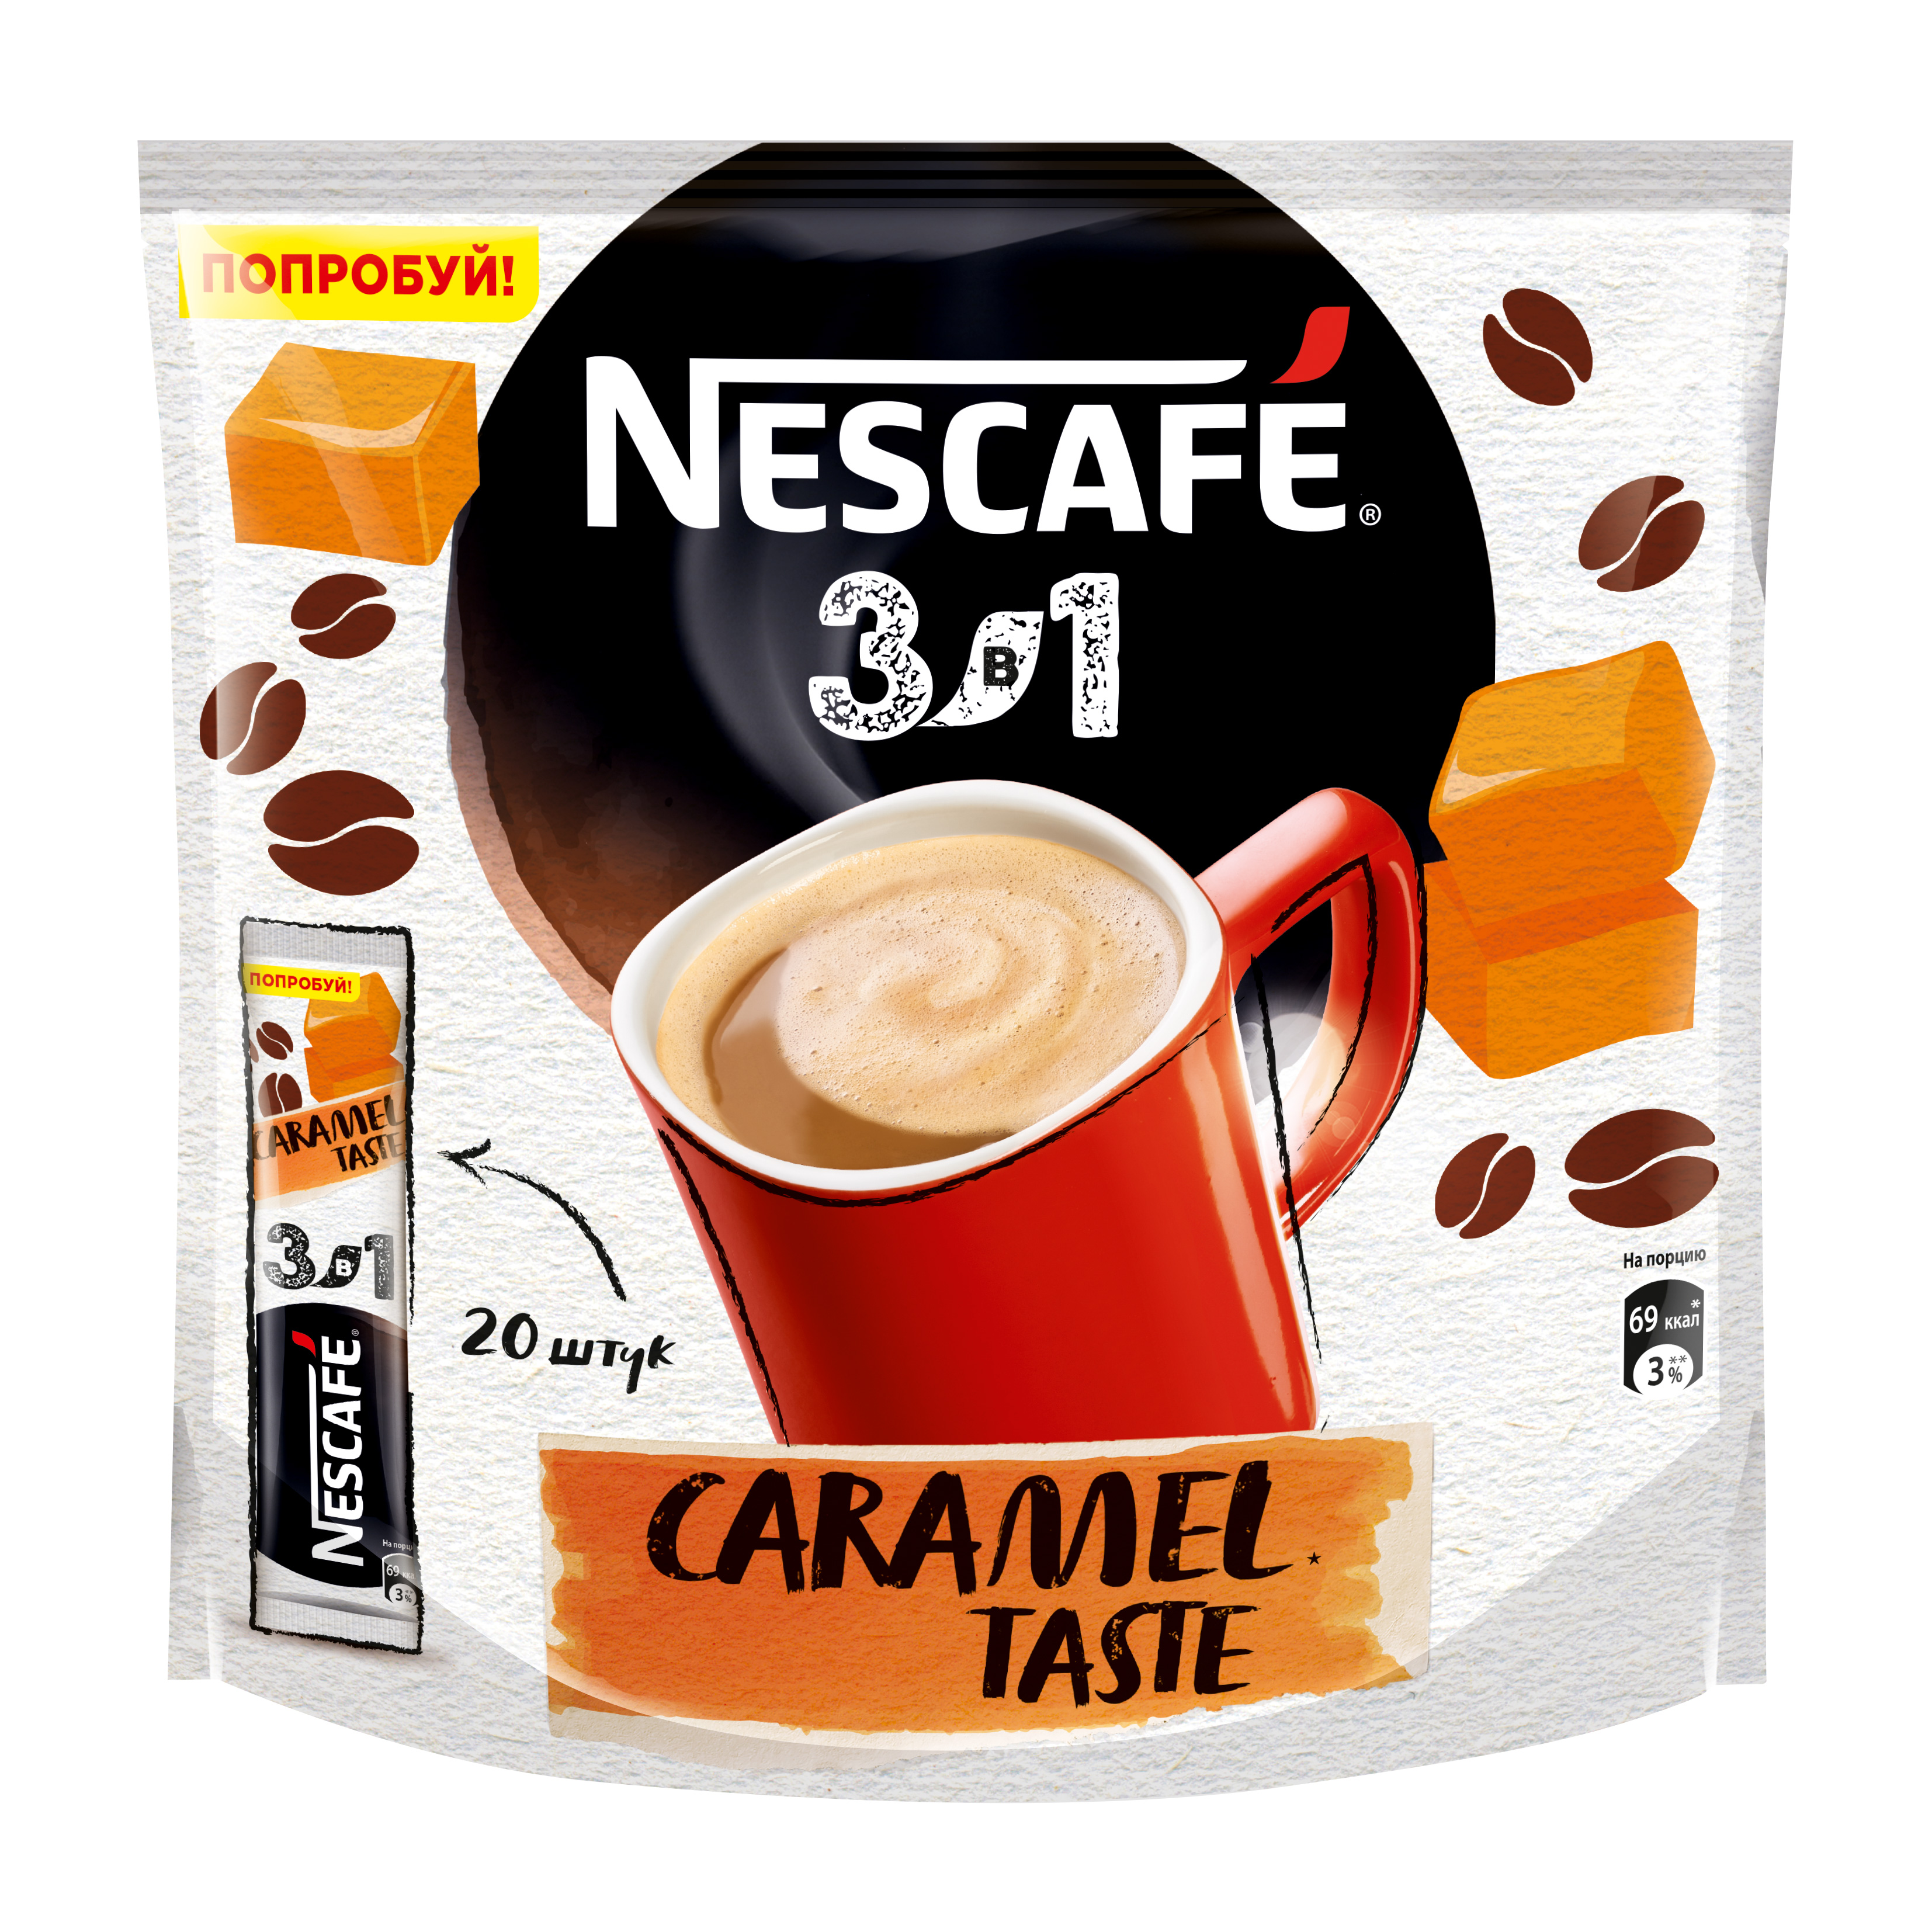 Кофе нескафе в пакетиках. Кофе Нескафе 3 в 1 карамель. Кофе Нескафе в пакетиках 3 в 1. Nescafe 3в1 карамель. Кофе Nescafe 3 в 1 растворимый карамель.